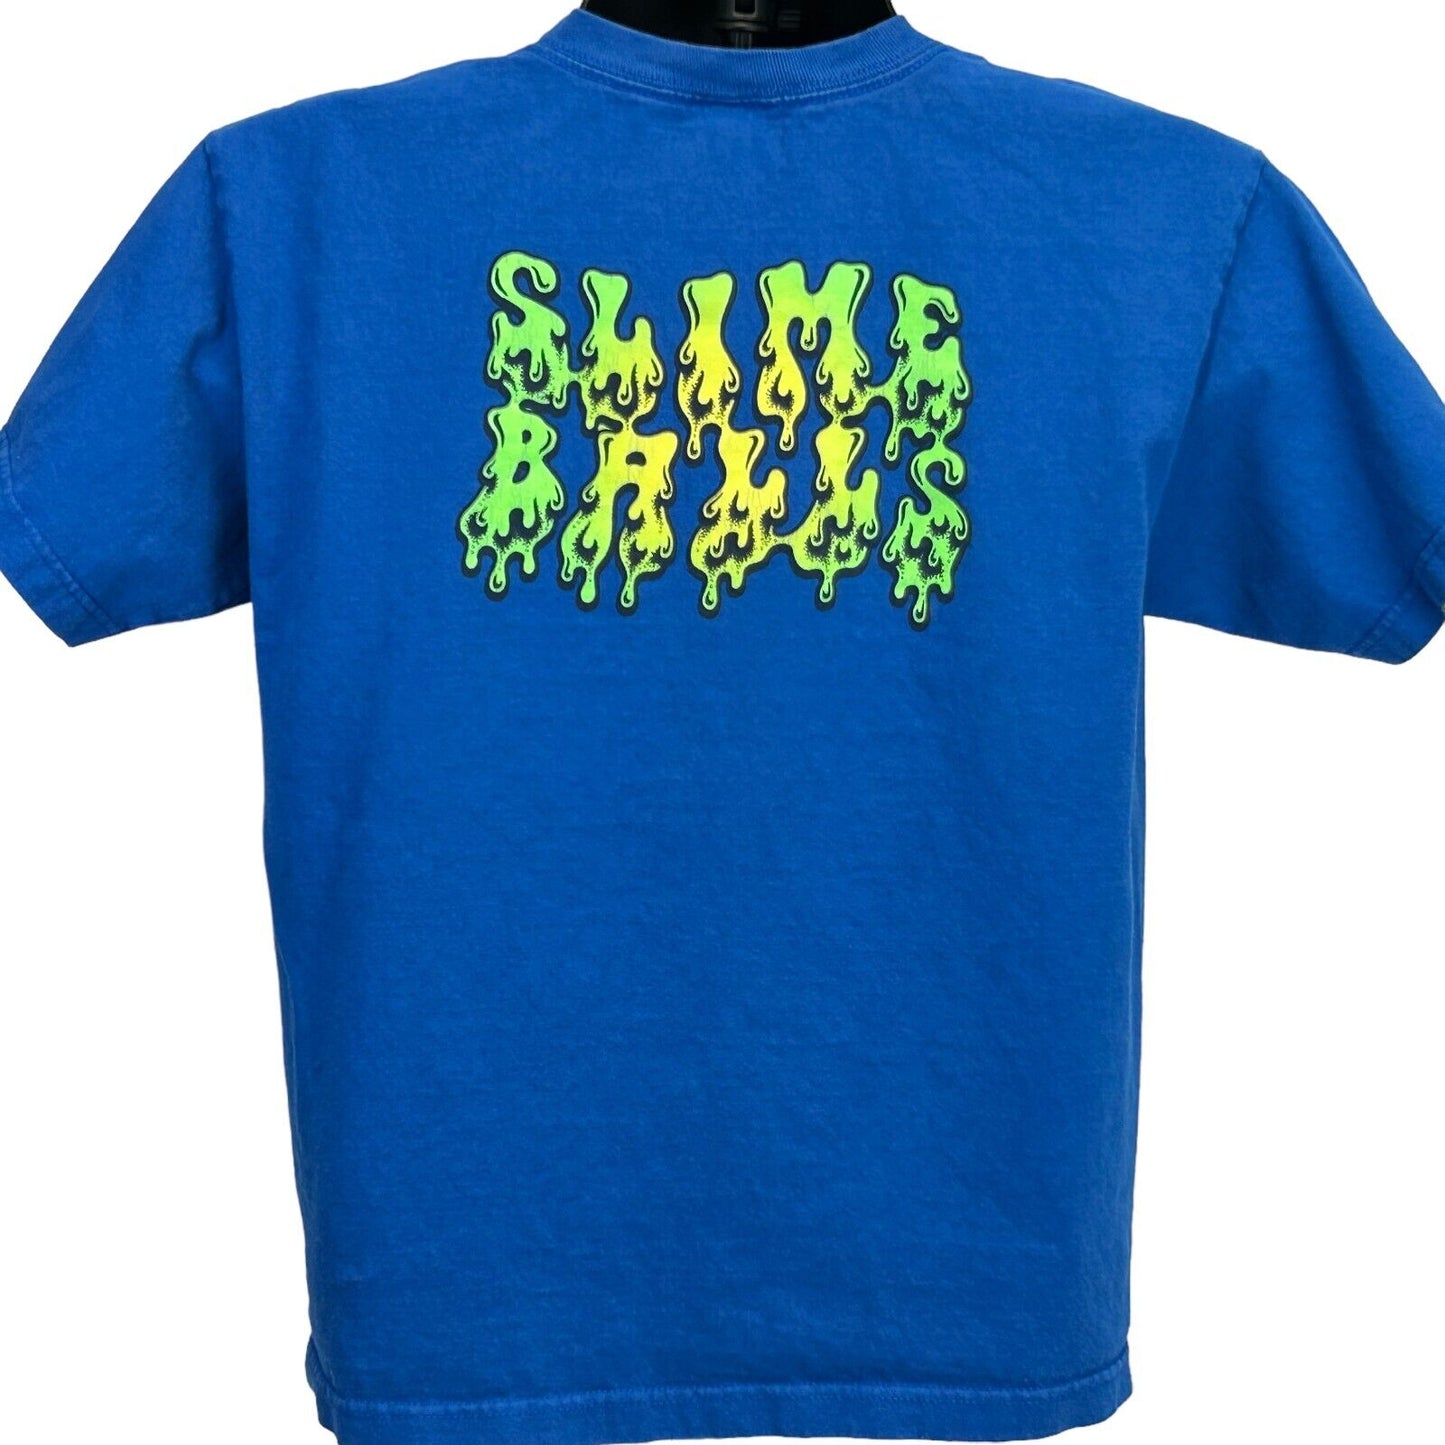 Santa Cruz Slime Balls Skateboarding Youth T Shirt Skater Skating Kids Boys XL